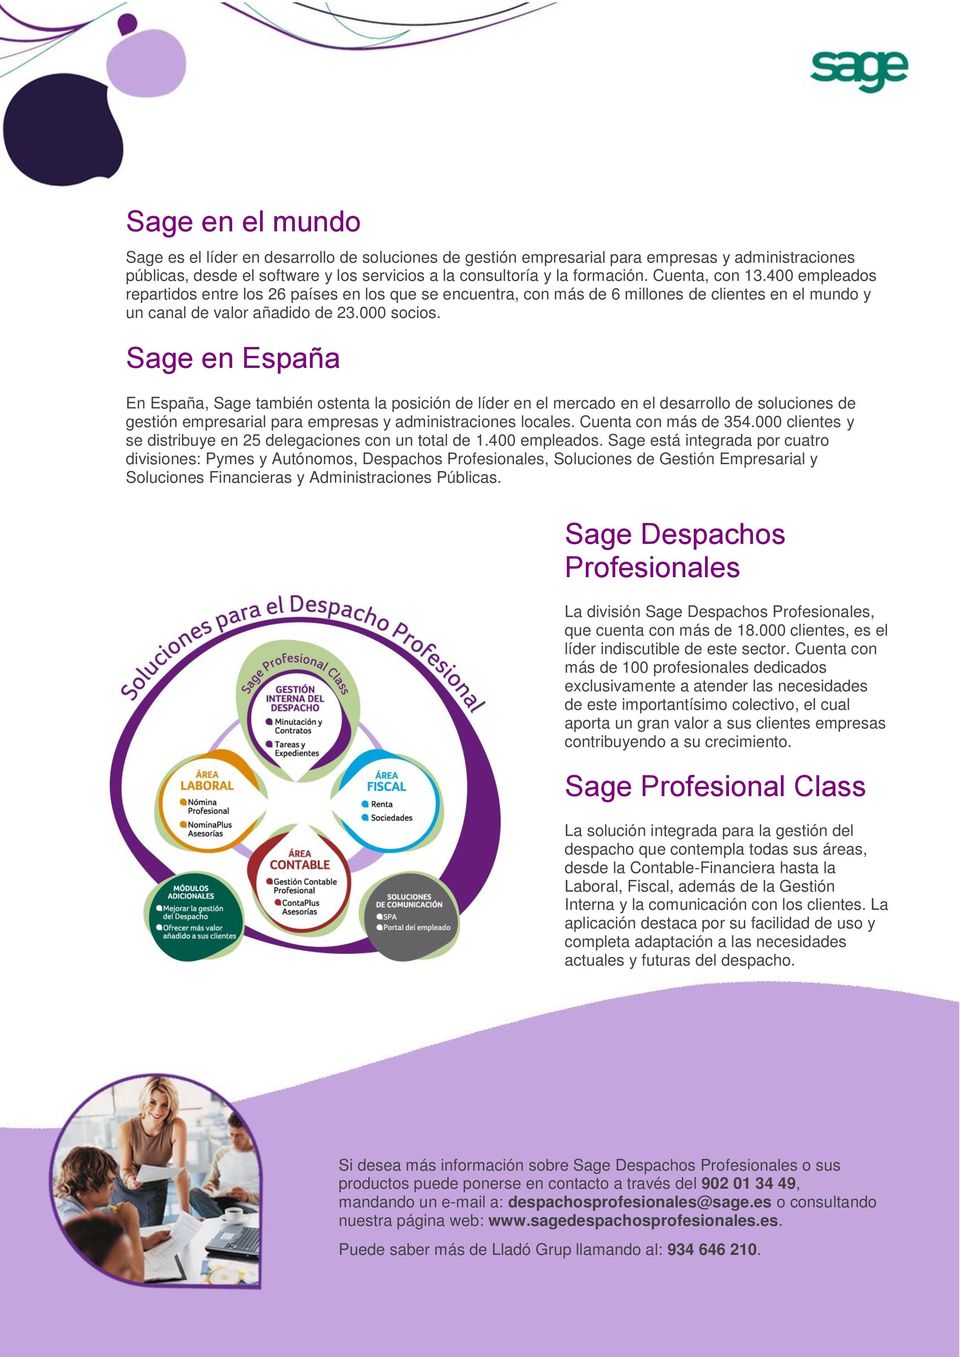 Sage en España En España, Sage también ostenta la posición de líder en el mercado en el desarrollo de soluciones de gestión empresarial para empresas y administraciones locales. Cuenta con más de 354.